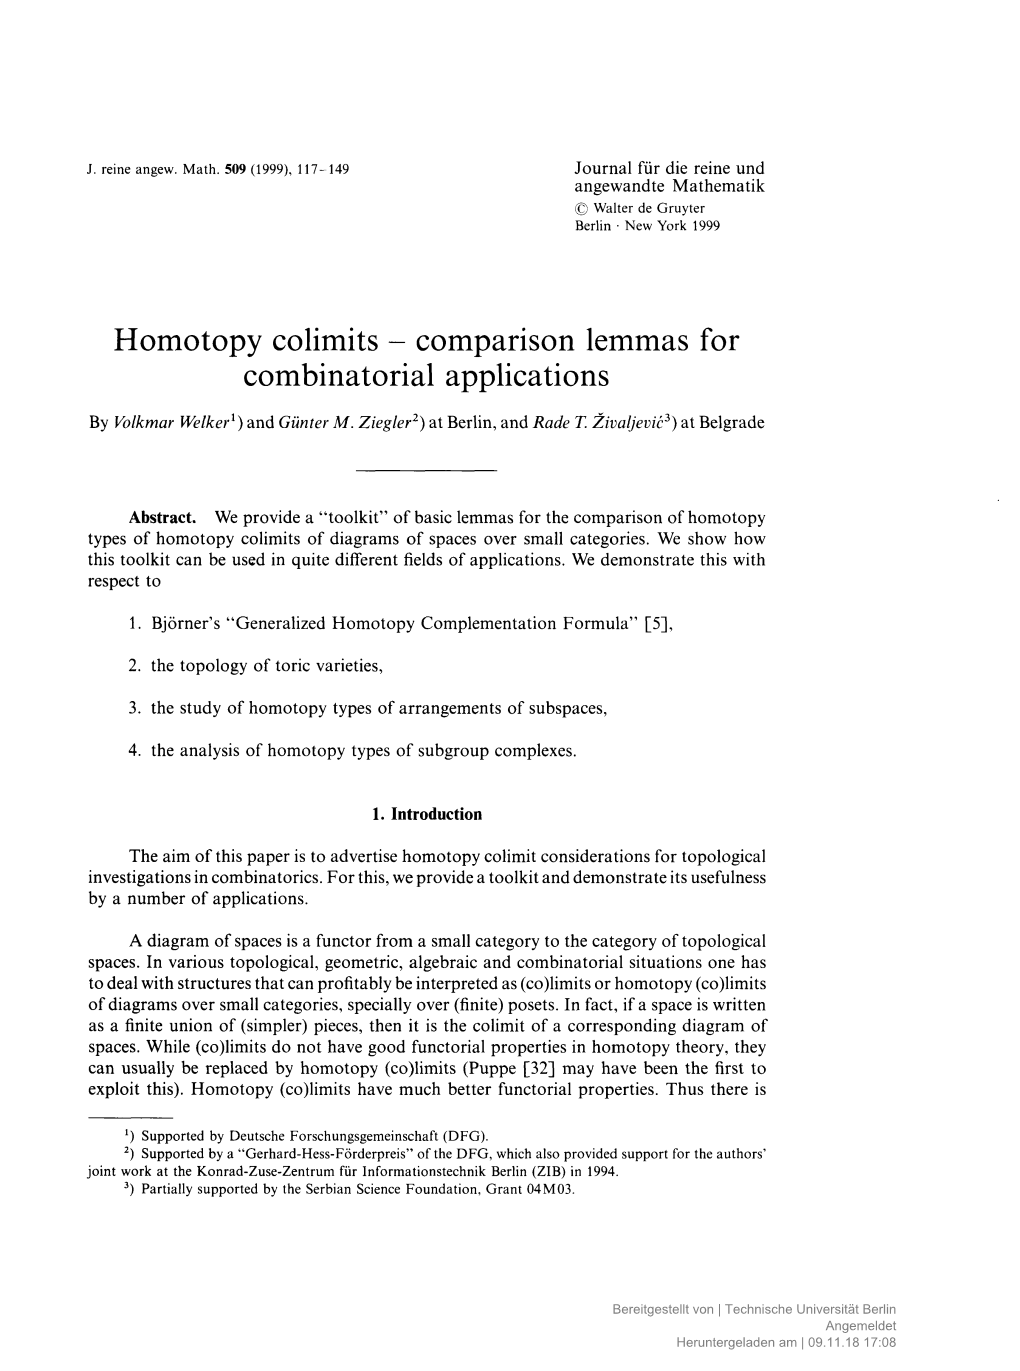 Homotopy Colimits - Comparison Lemmas for Combinatorial Applications